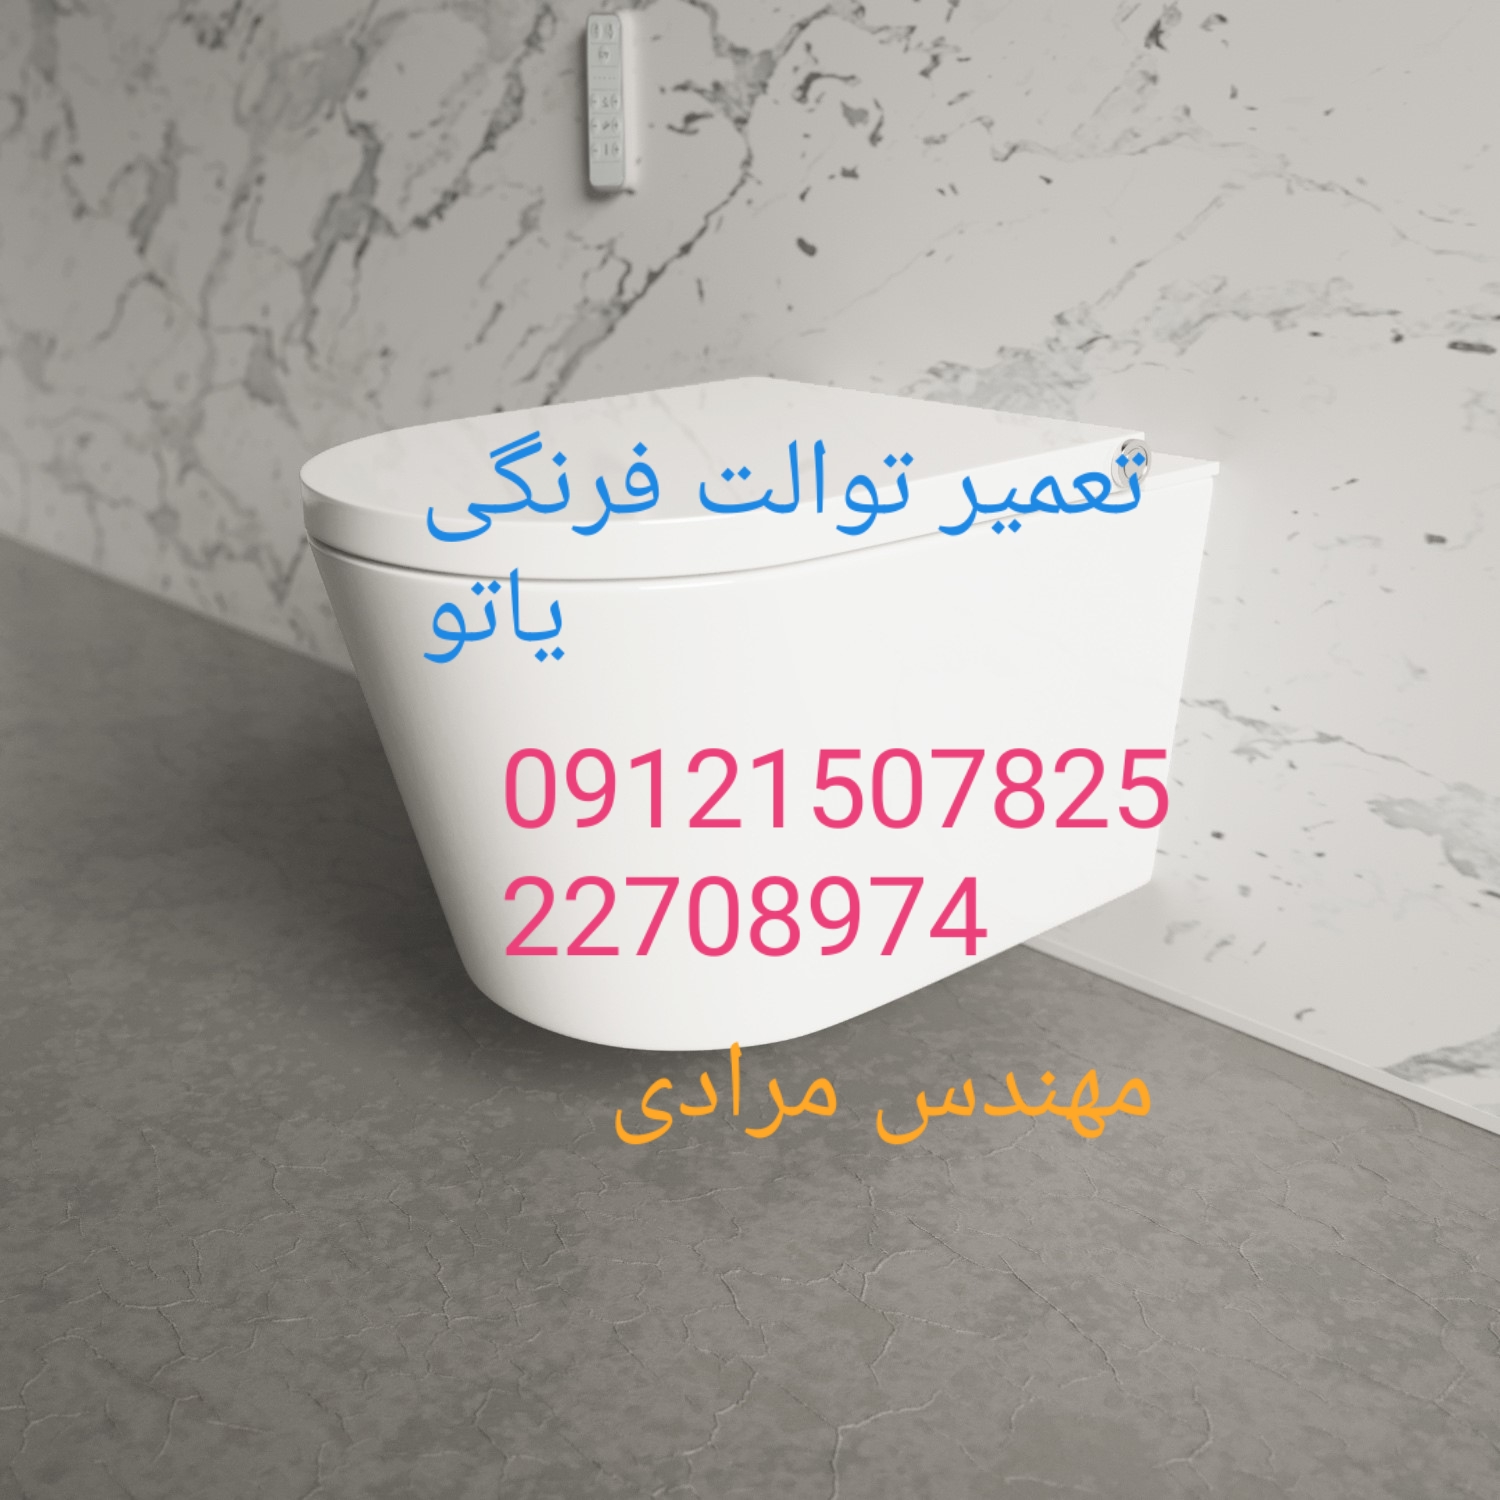 فروش قطعات و لوازم توالت فرنگی یاتو 09121507825 در تهران و البرز